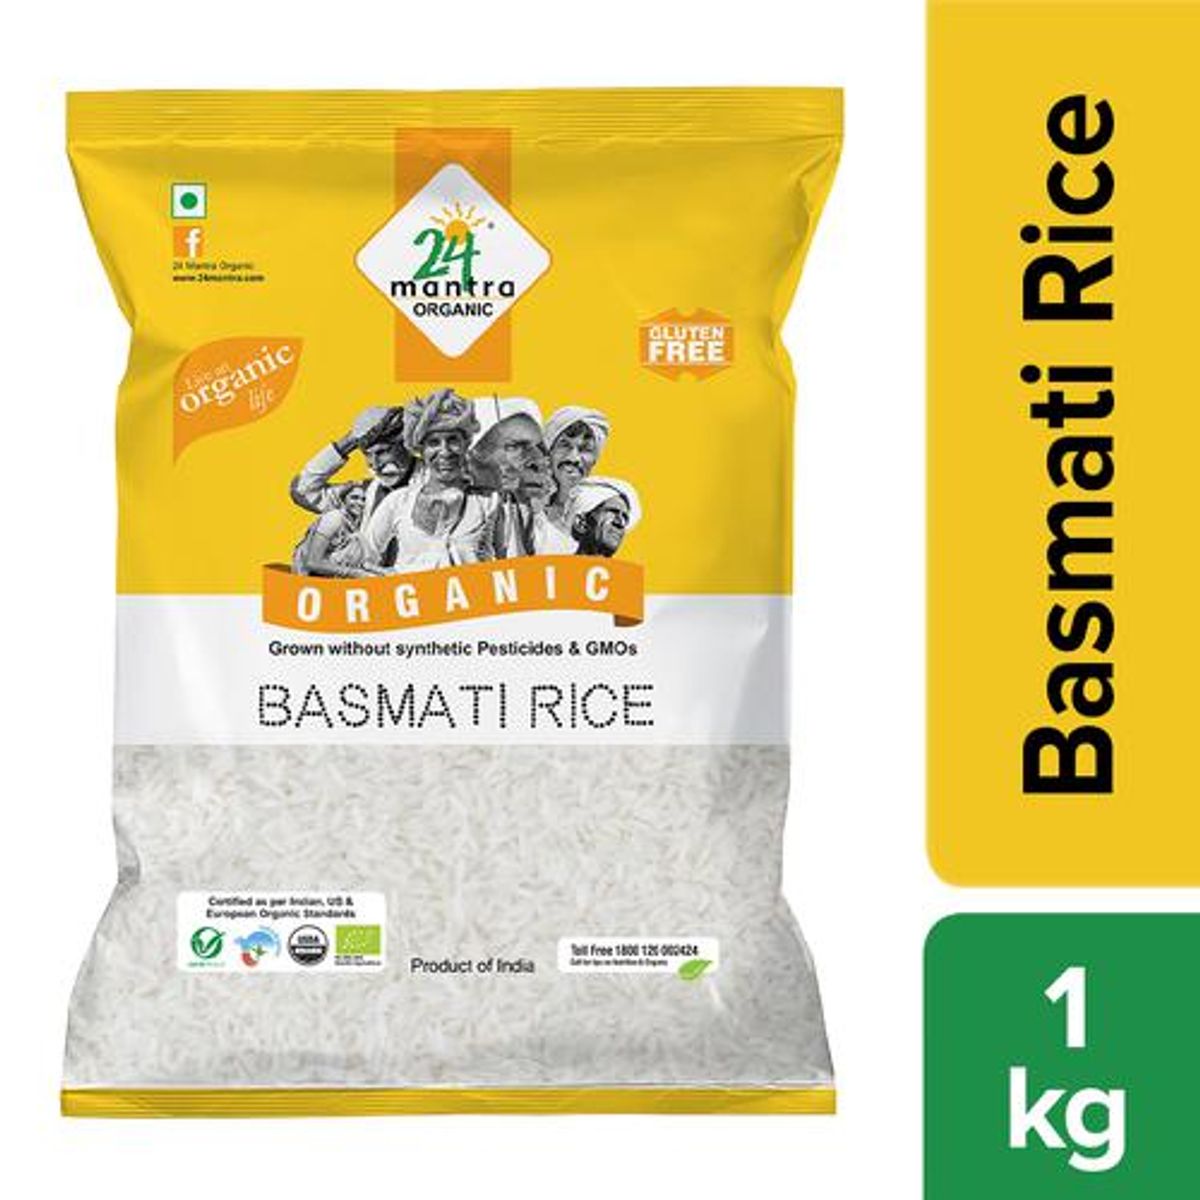 24 Mantra Organic Rice White Basmati Image